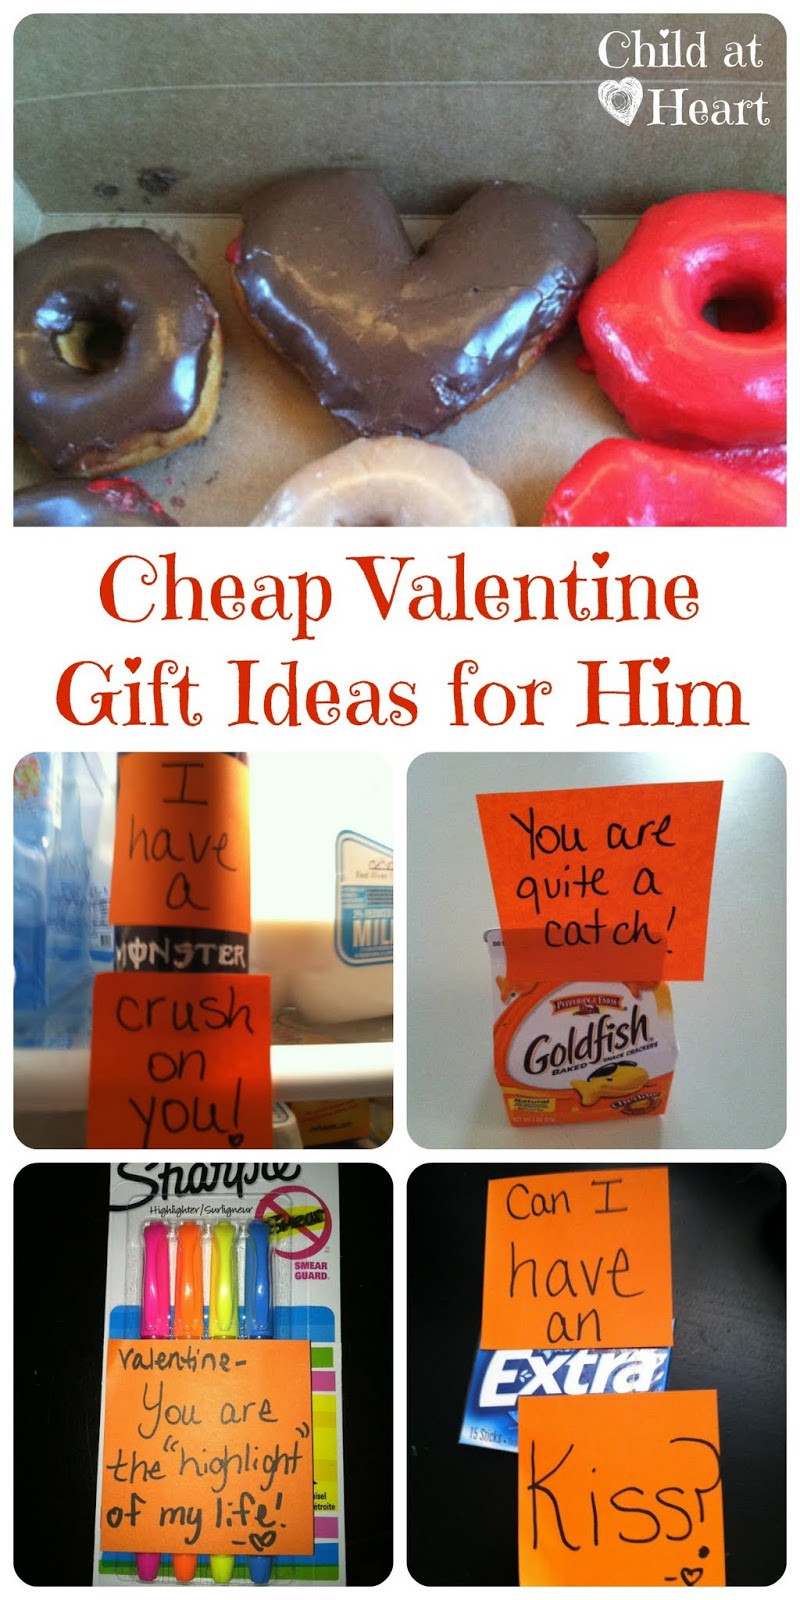 Valentine Day Gift Ideas For Boyfriend
 Cheap Valentine Gift Ideas for Him Child at Heart Blog